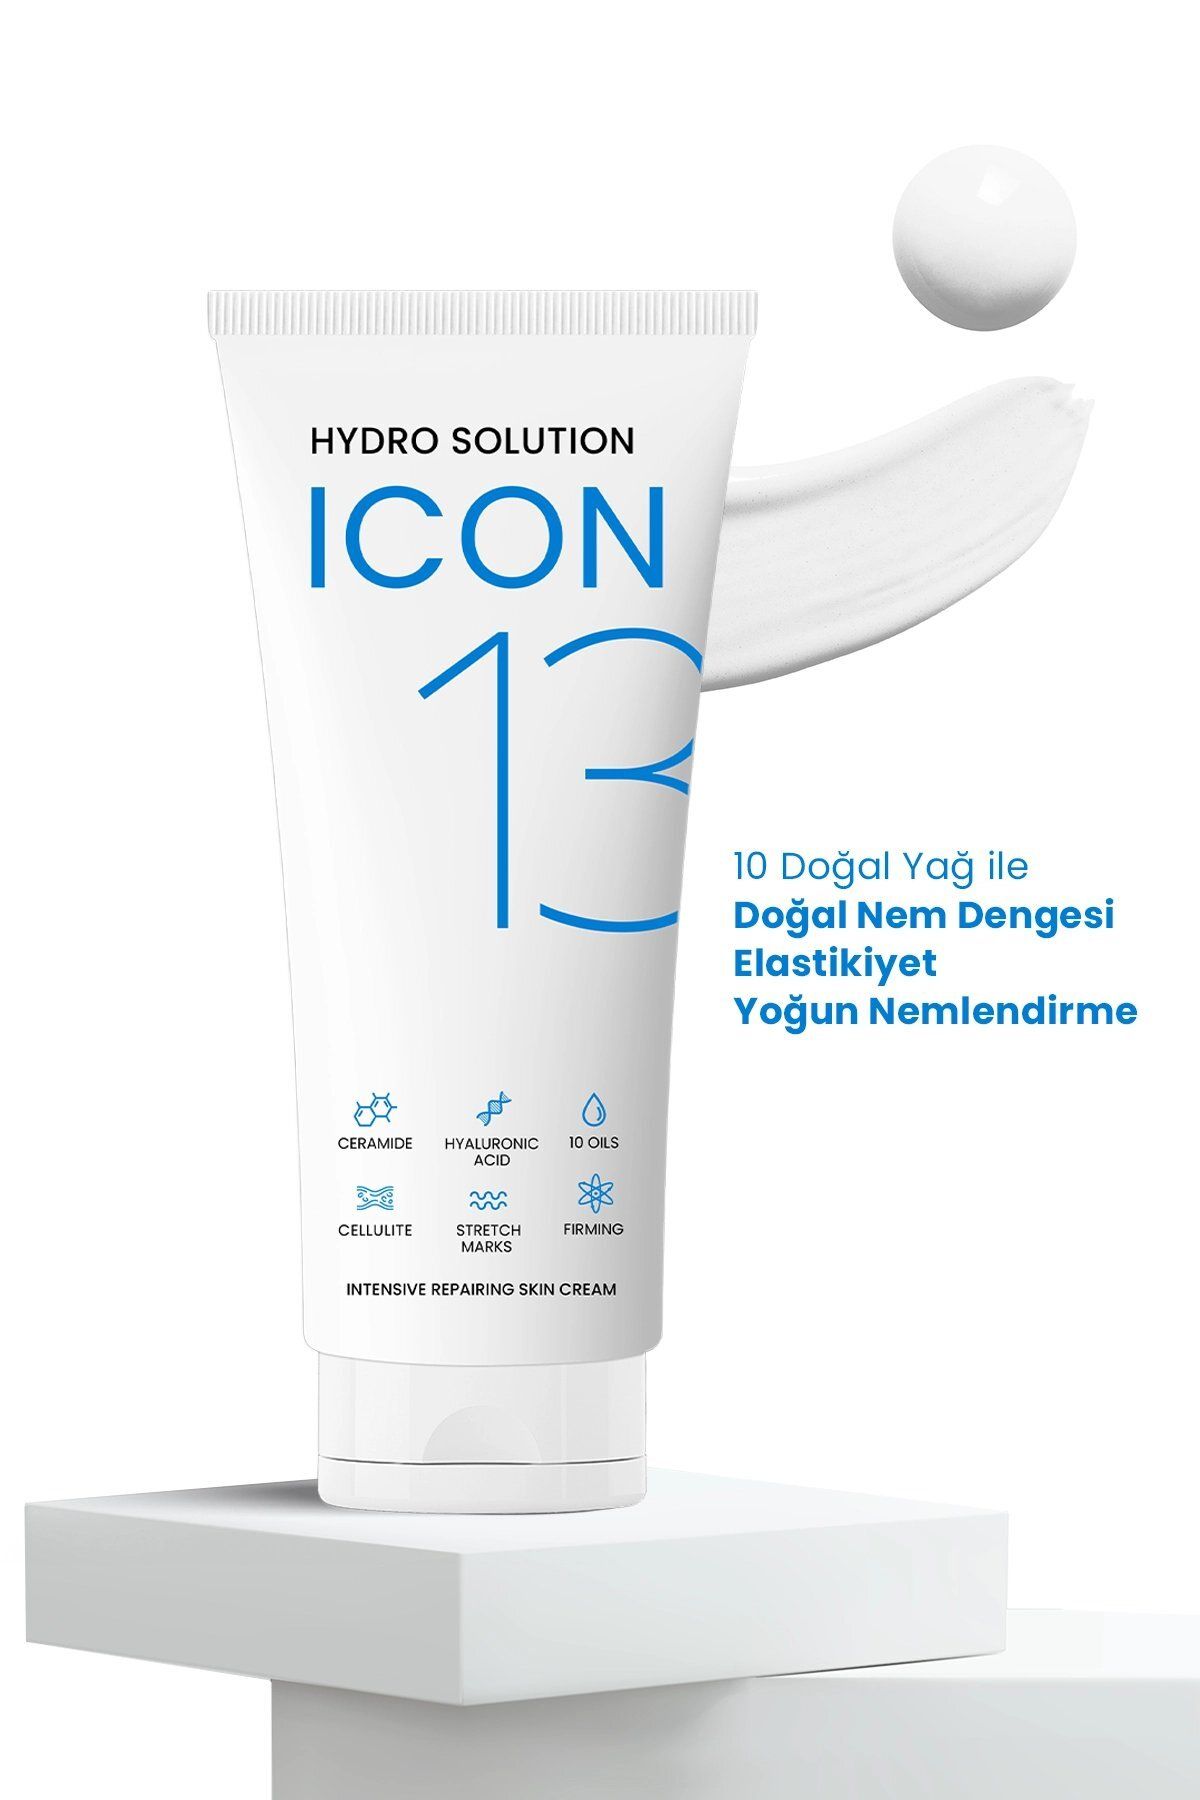 PROCSIN کرم مرطوب کننده قوی ترمیم کننده و تجدید کننده پوست 13 Hydro Solution Icon کرم 13 منظوره 175 میل